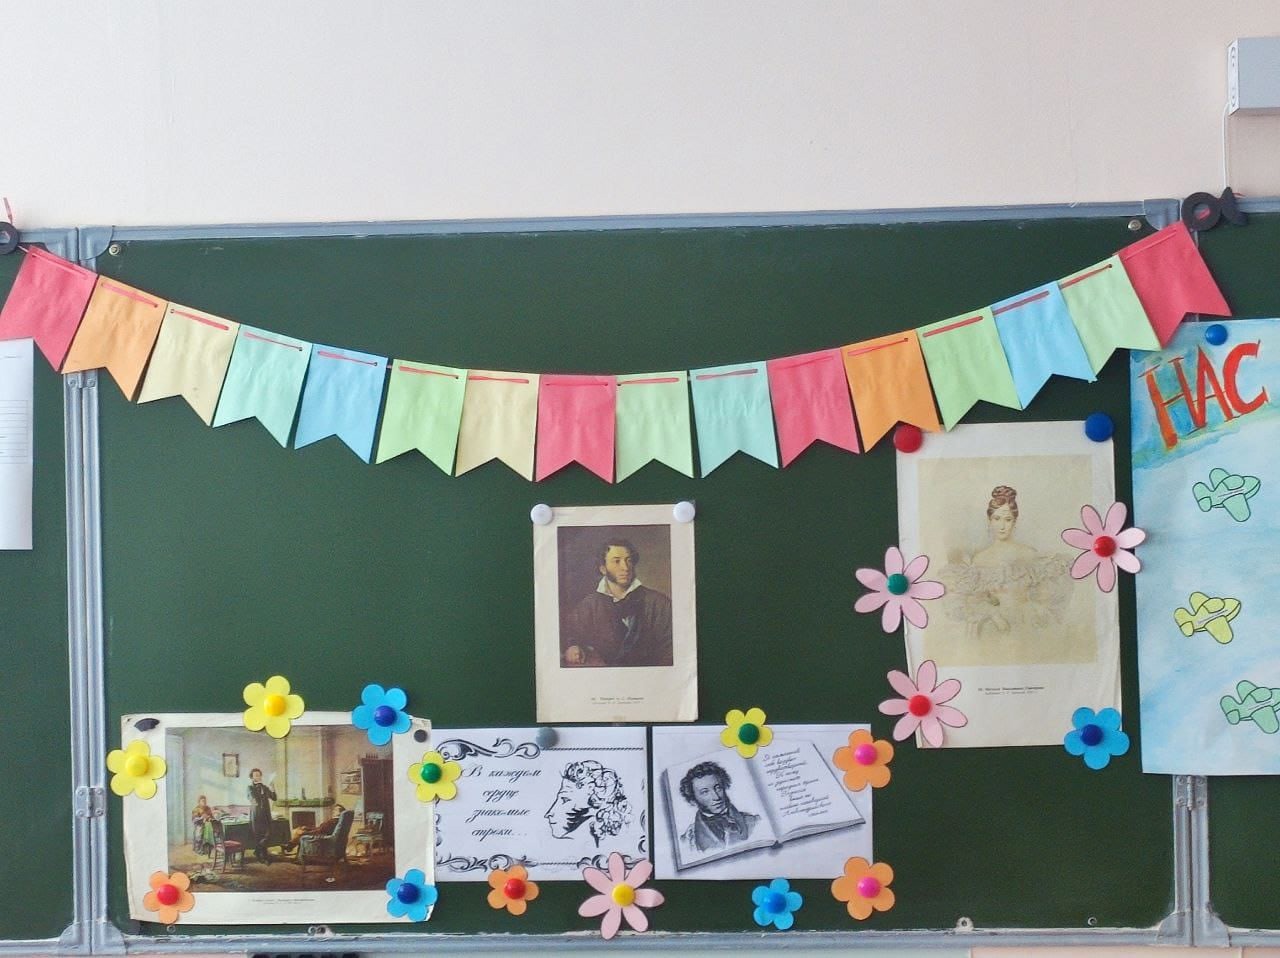 Пушкинский день в школьном лагере.